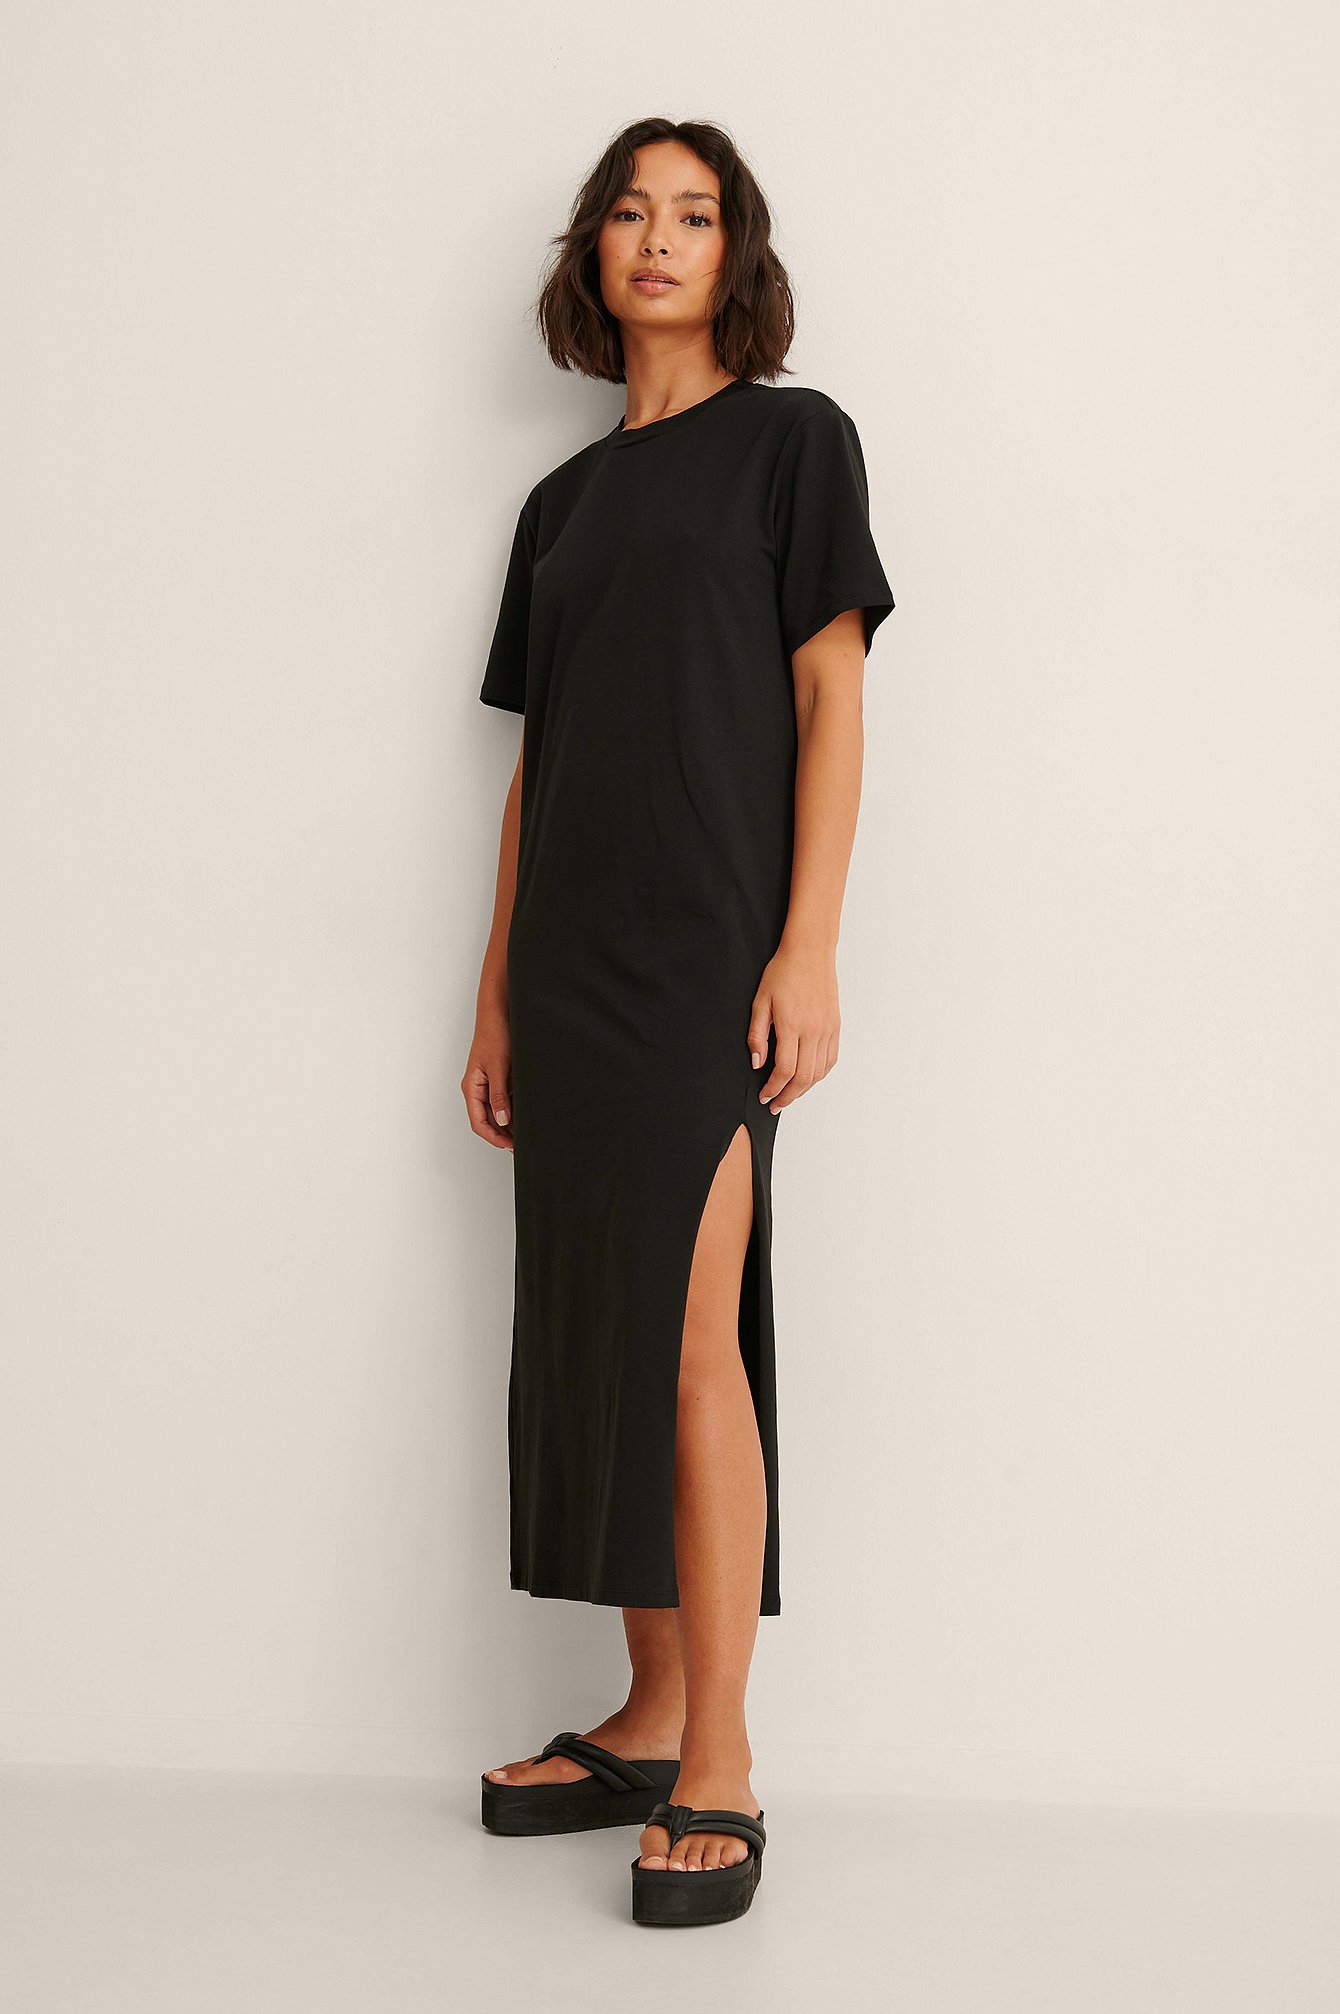 Peter Luft T-shirt jurk zwart elegant Mode Jurken T-shirt jurken 